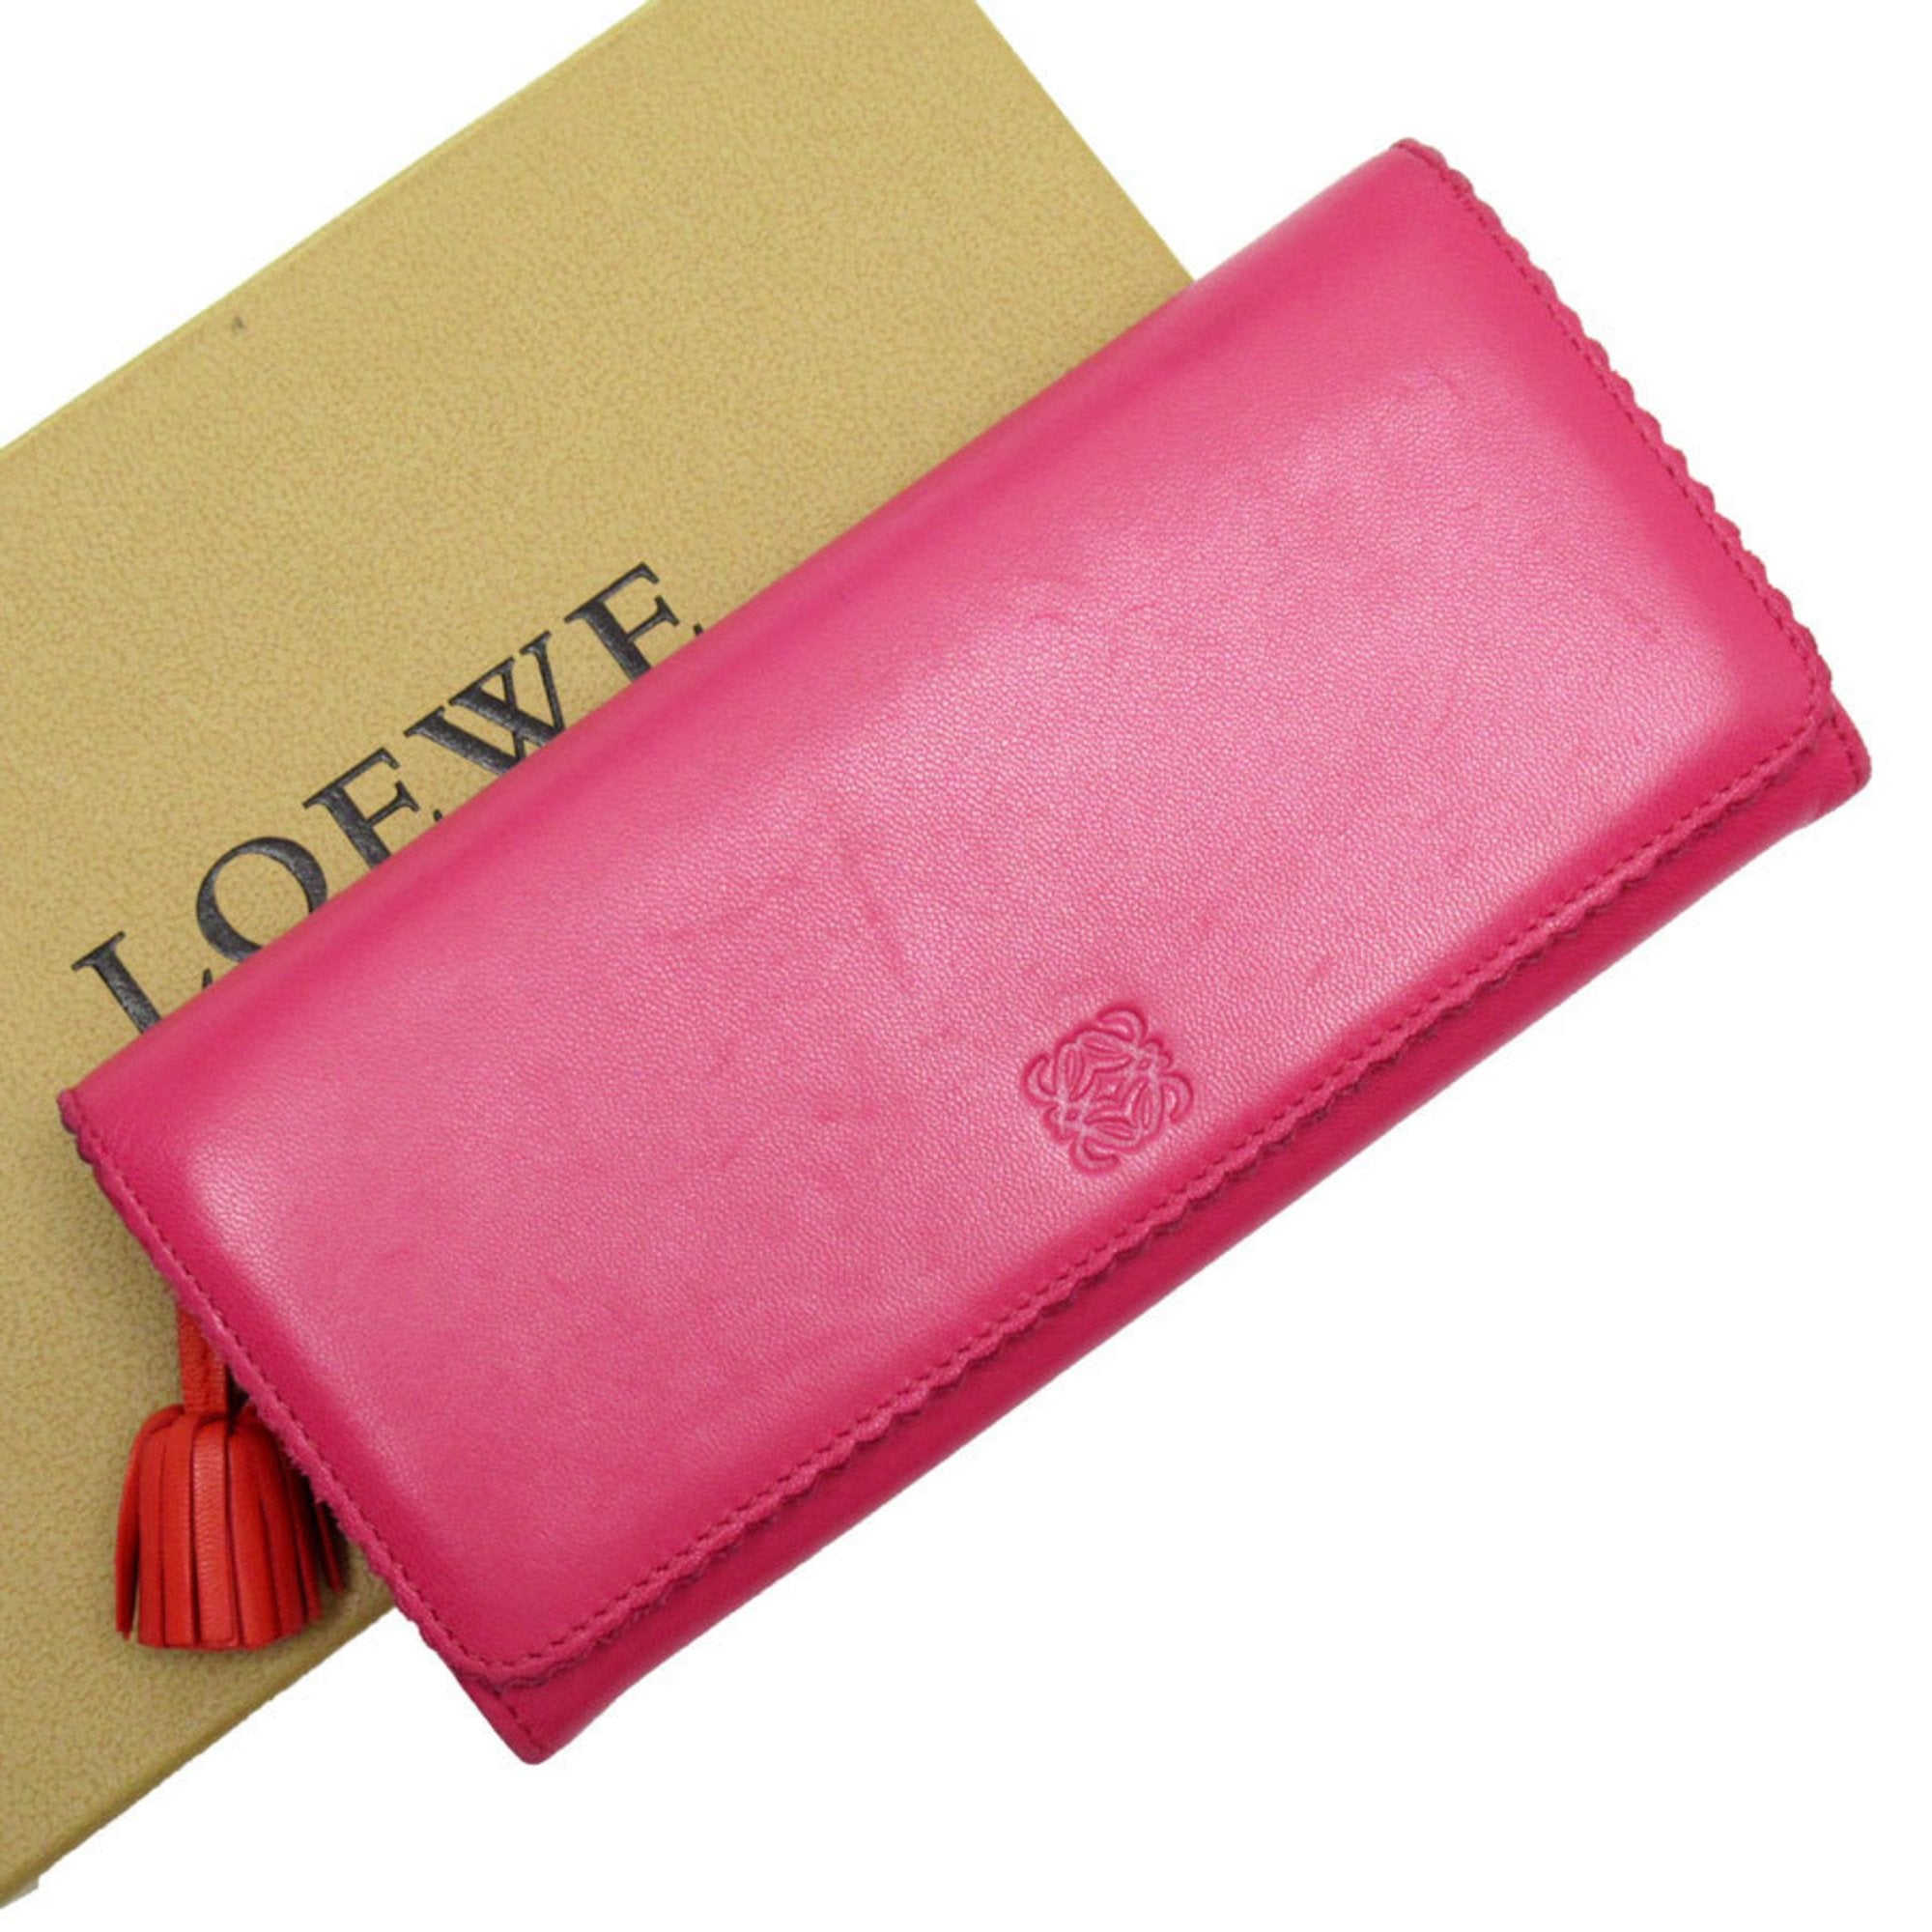 Bi-fold Long Wallet Anagram Tassel Leather Pink/Orange Silver Women's W0152a